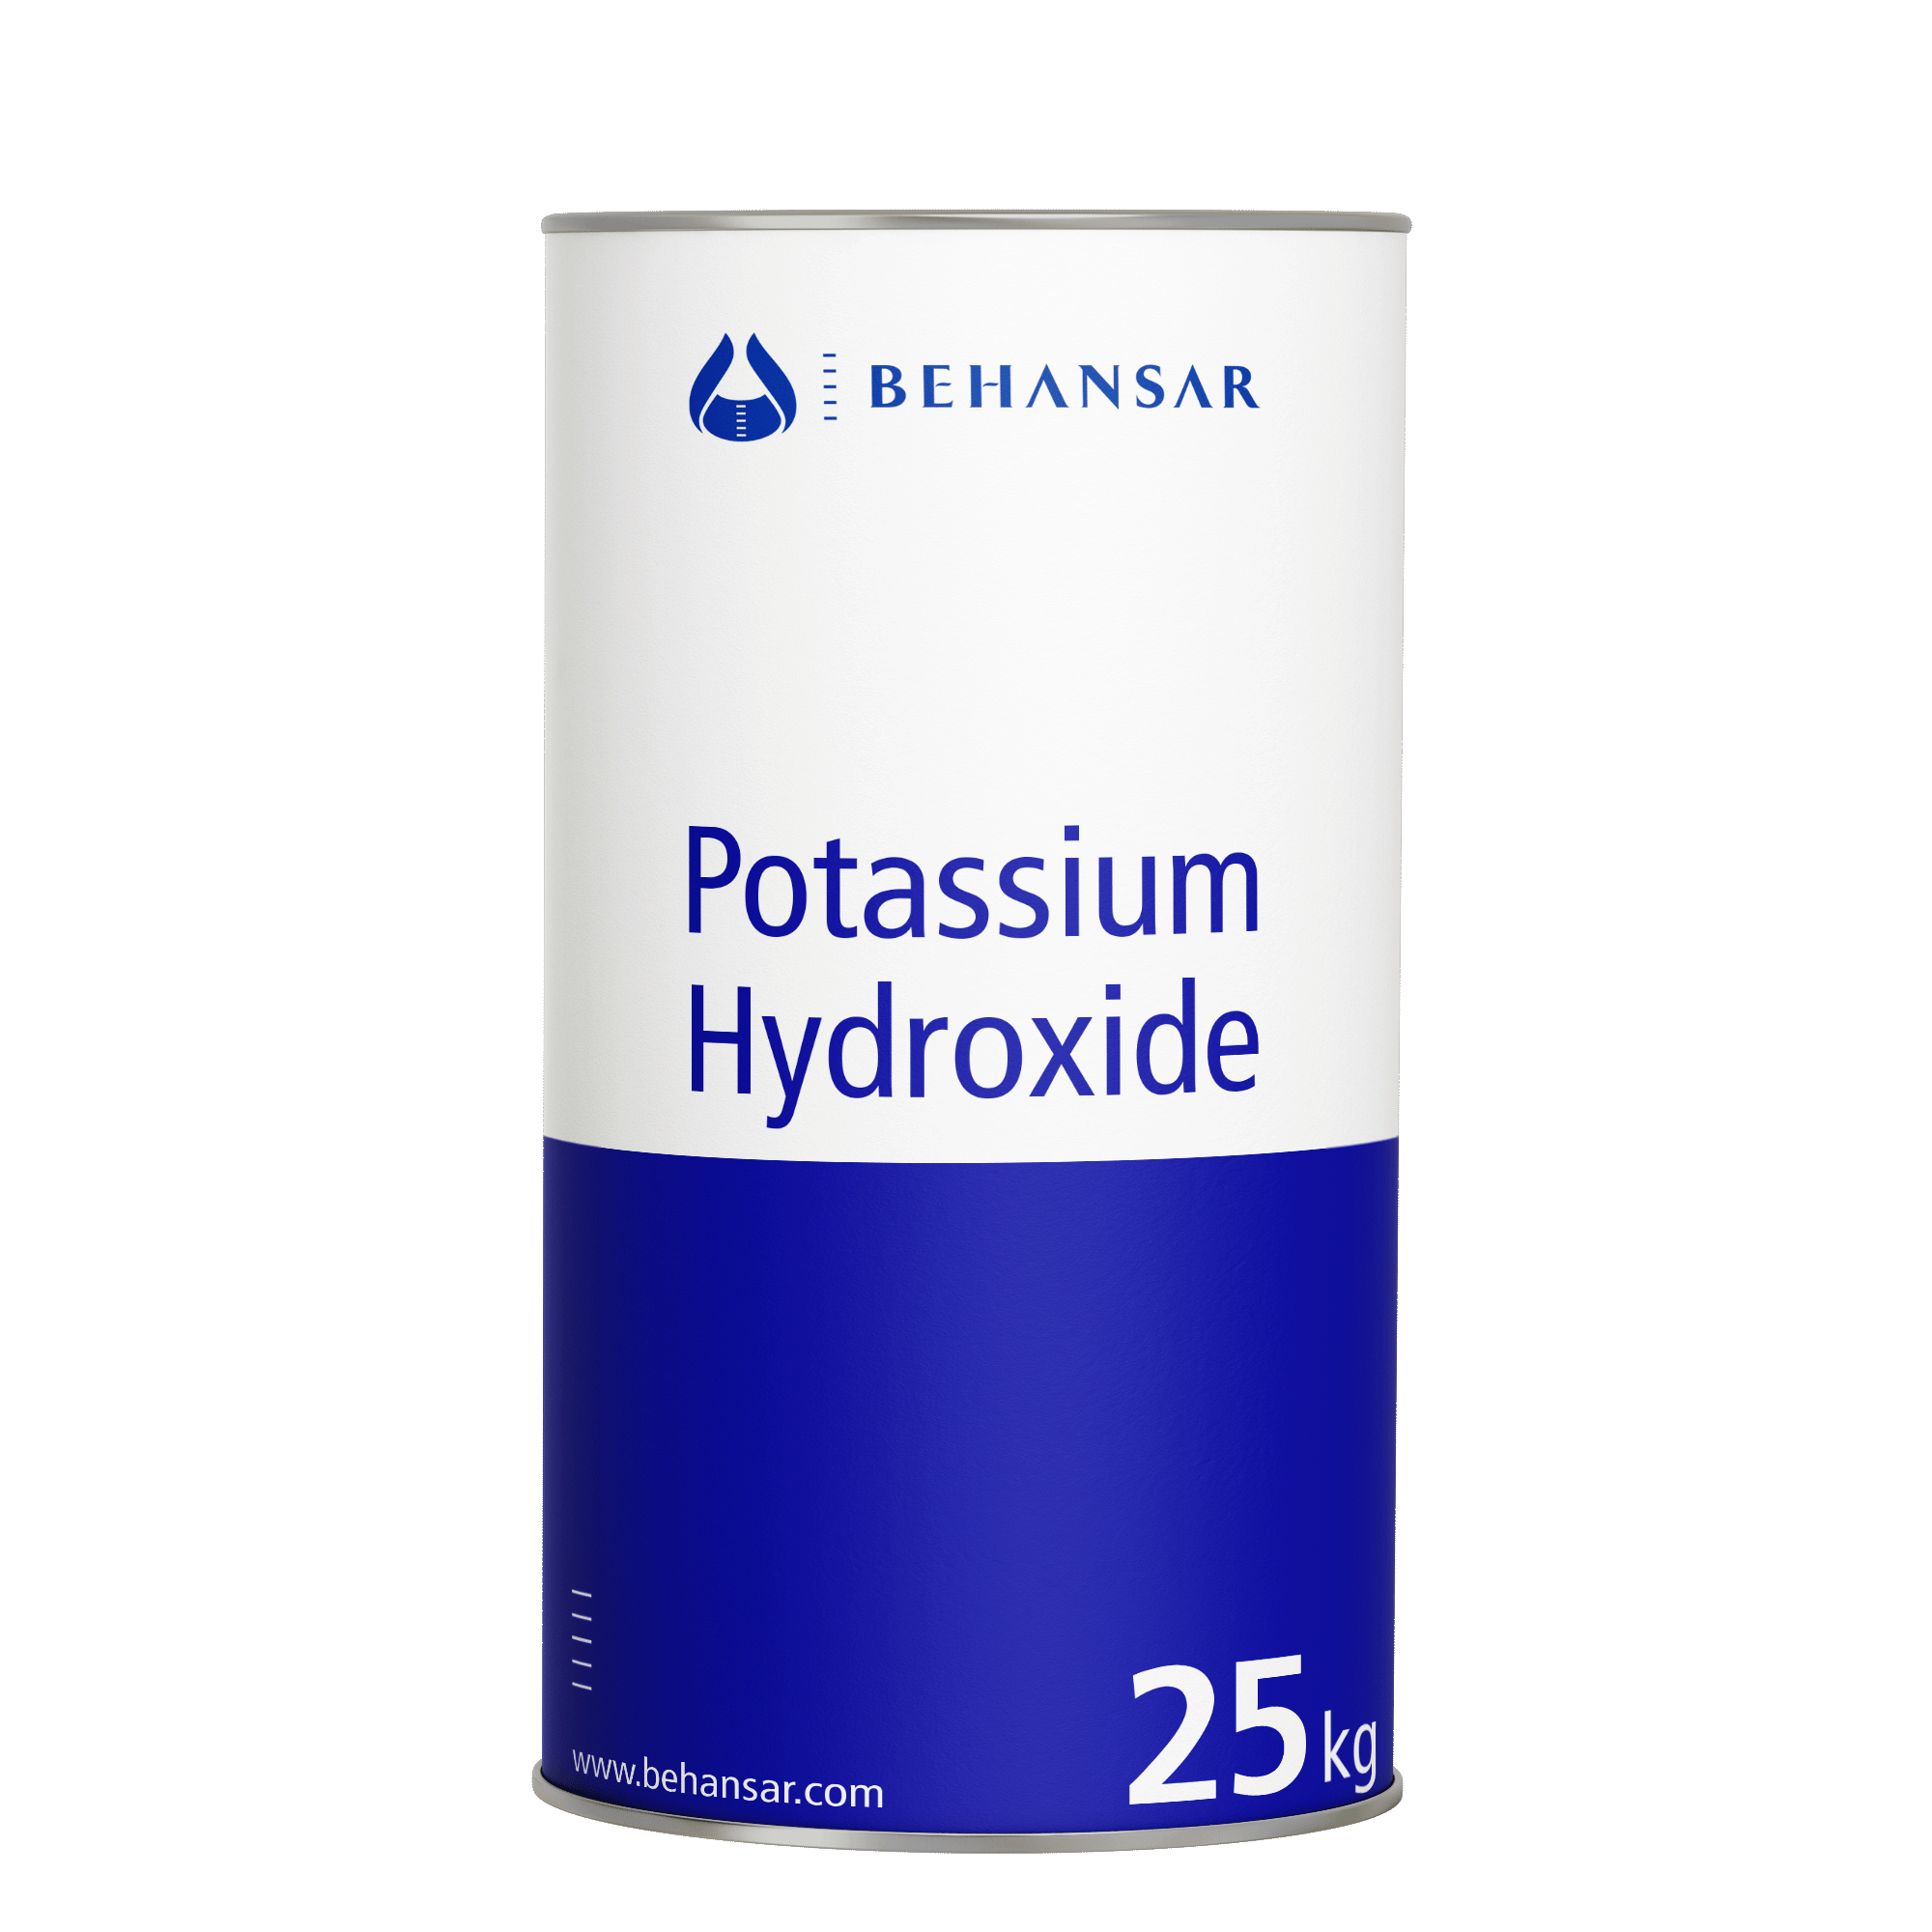 پتاسیم هیدروکساید 50% سولوشن یکی از تولیدات شرکت بهانسار است